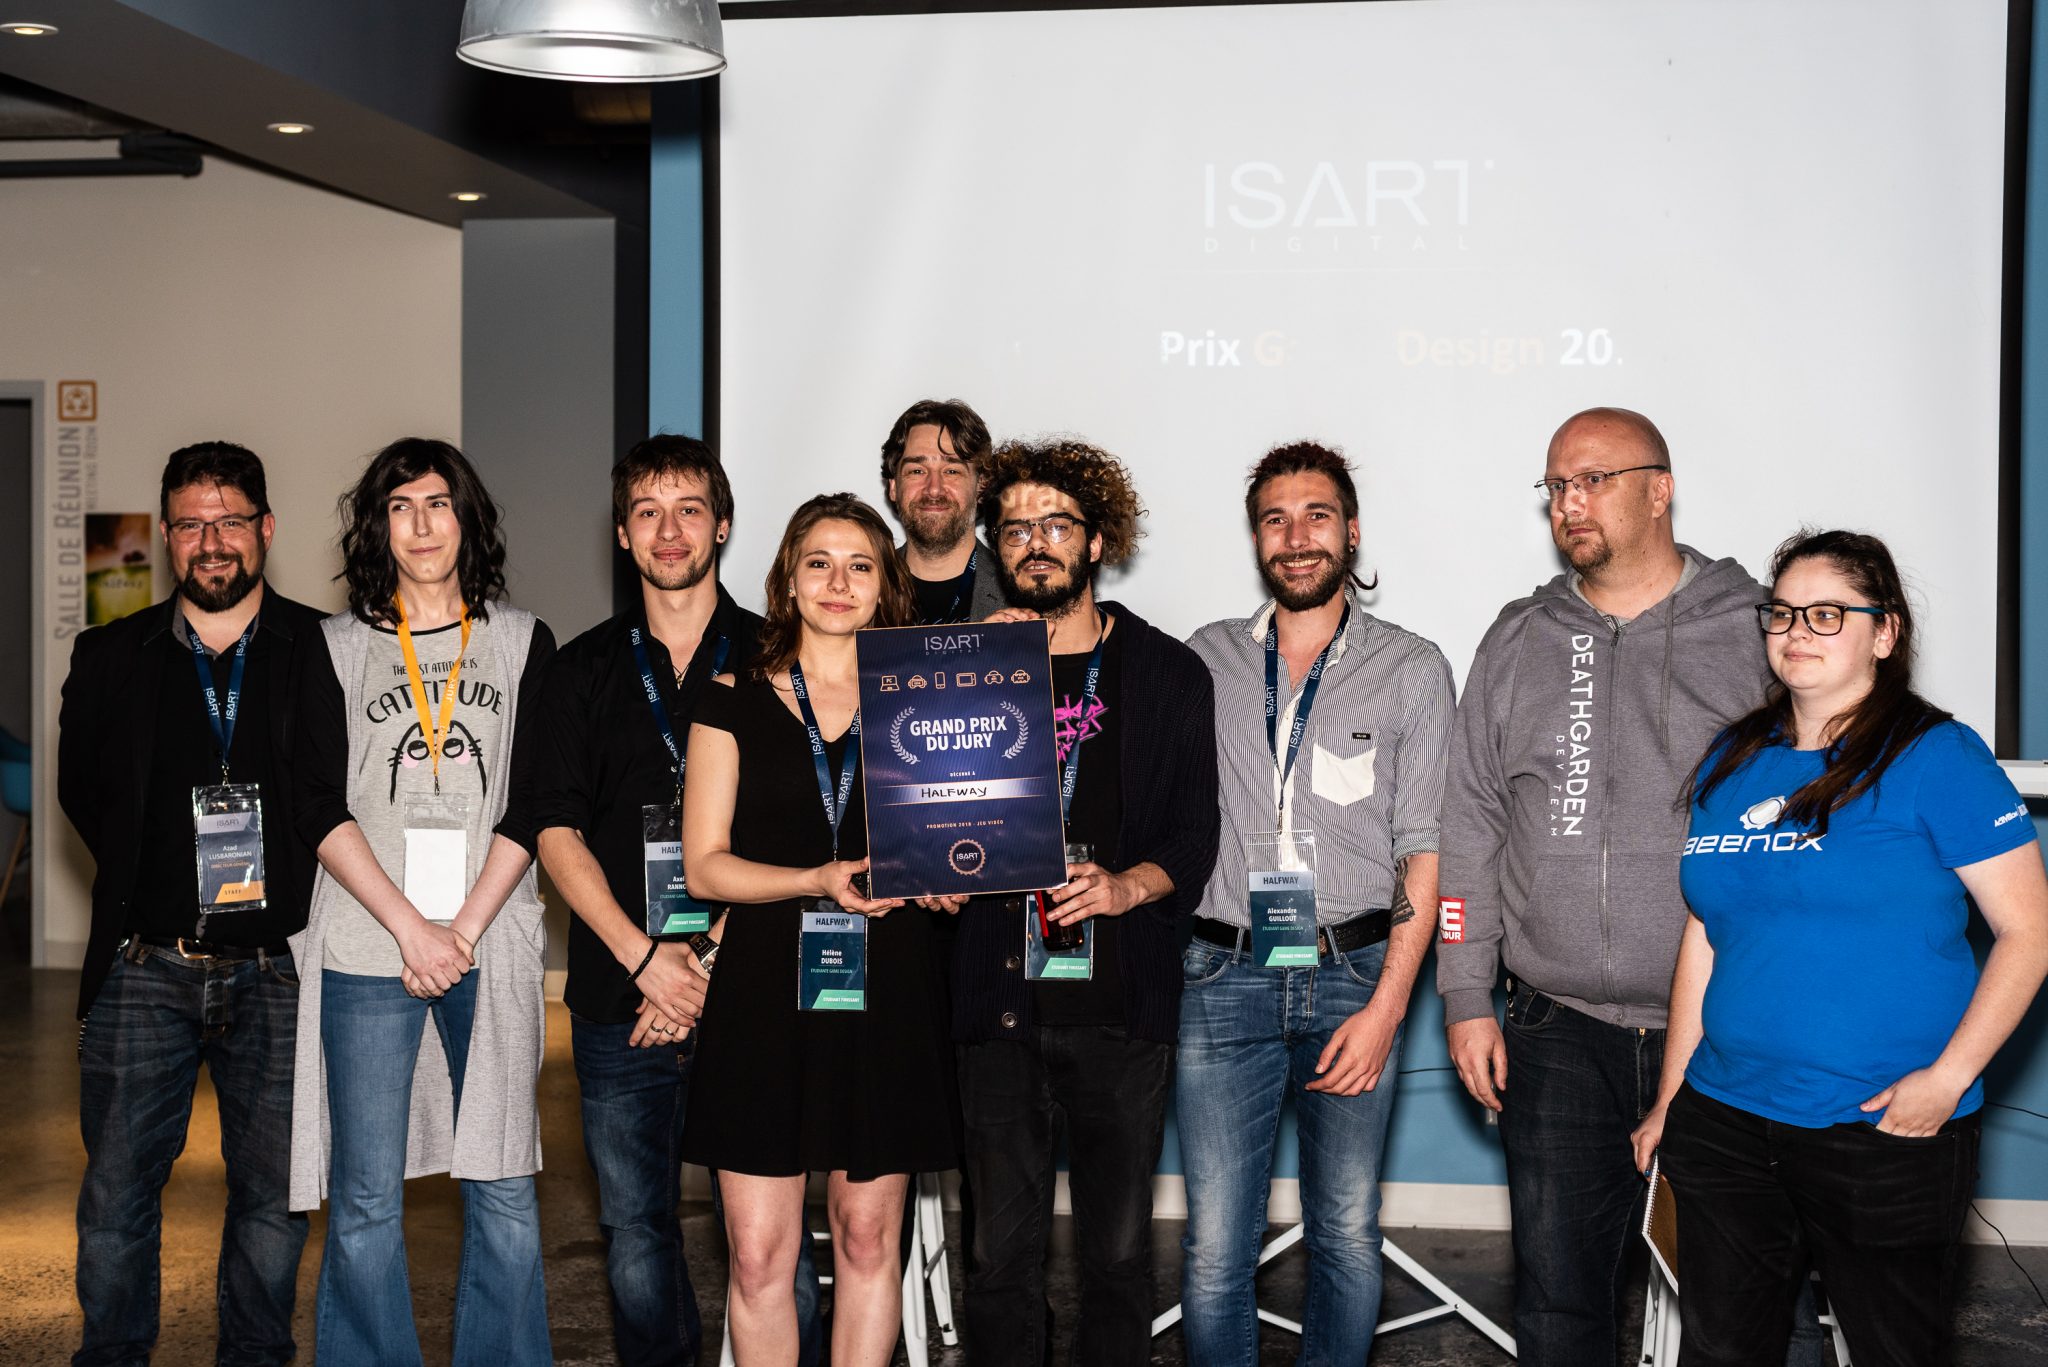 Gala des finissants en Game design au Collège Isart Digital Montréal au début juin